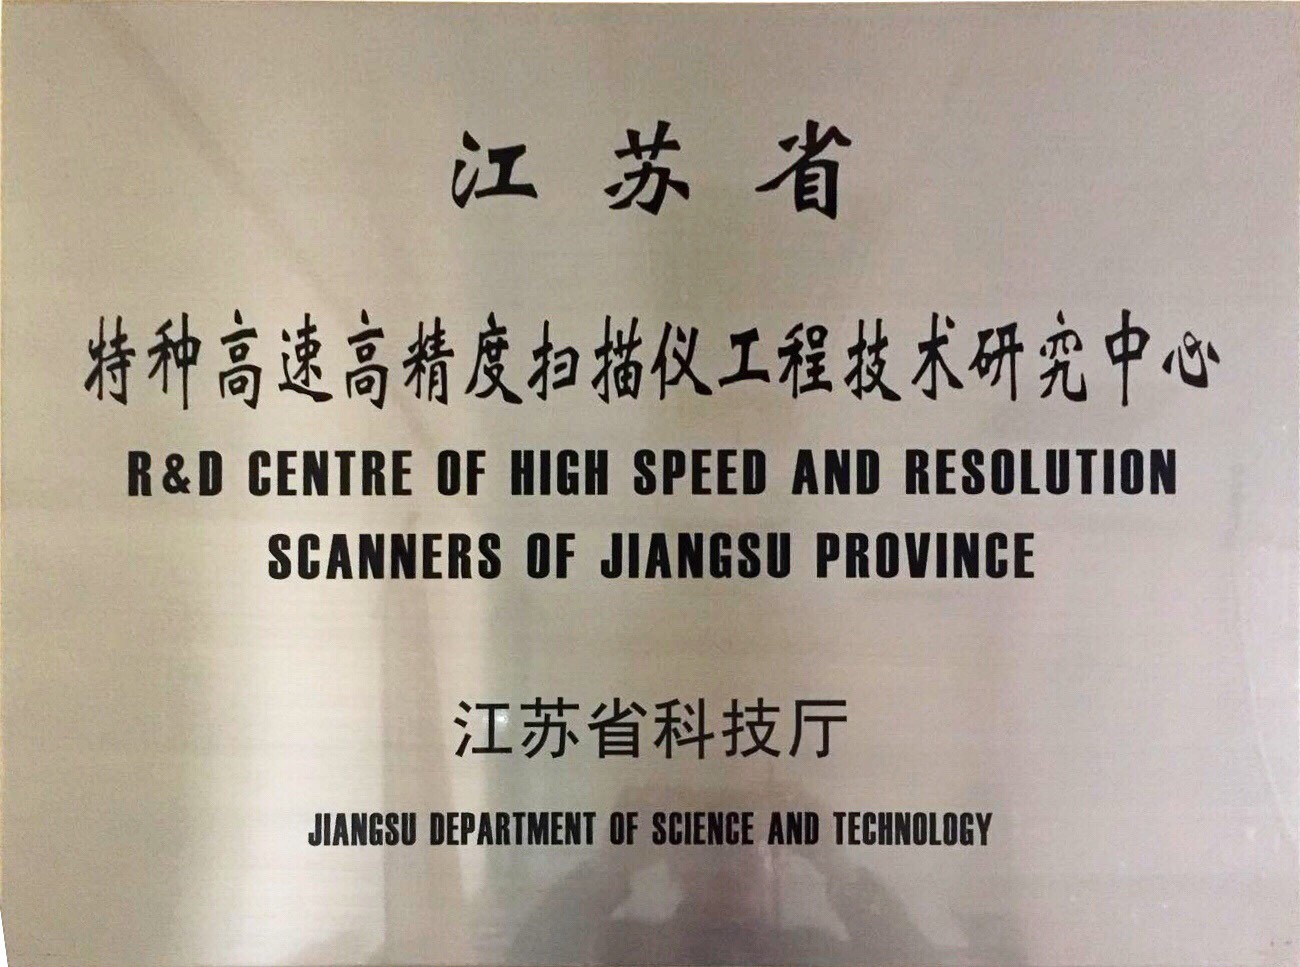 江苏省特种高速高精密扫描仪工程技术研发中心